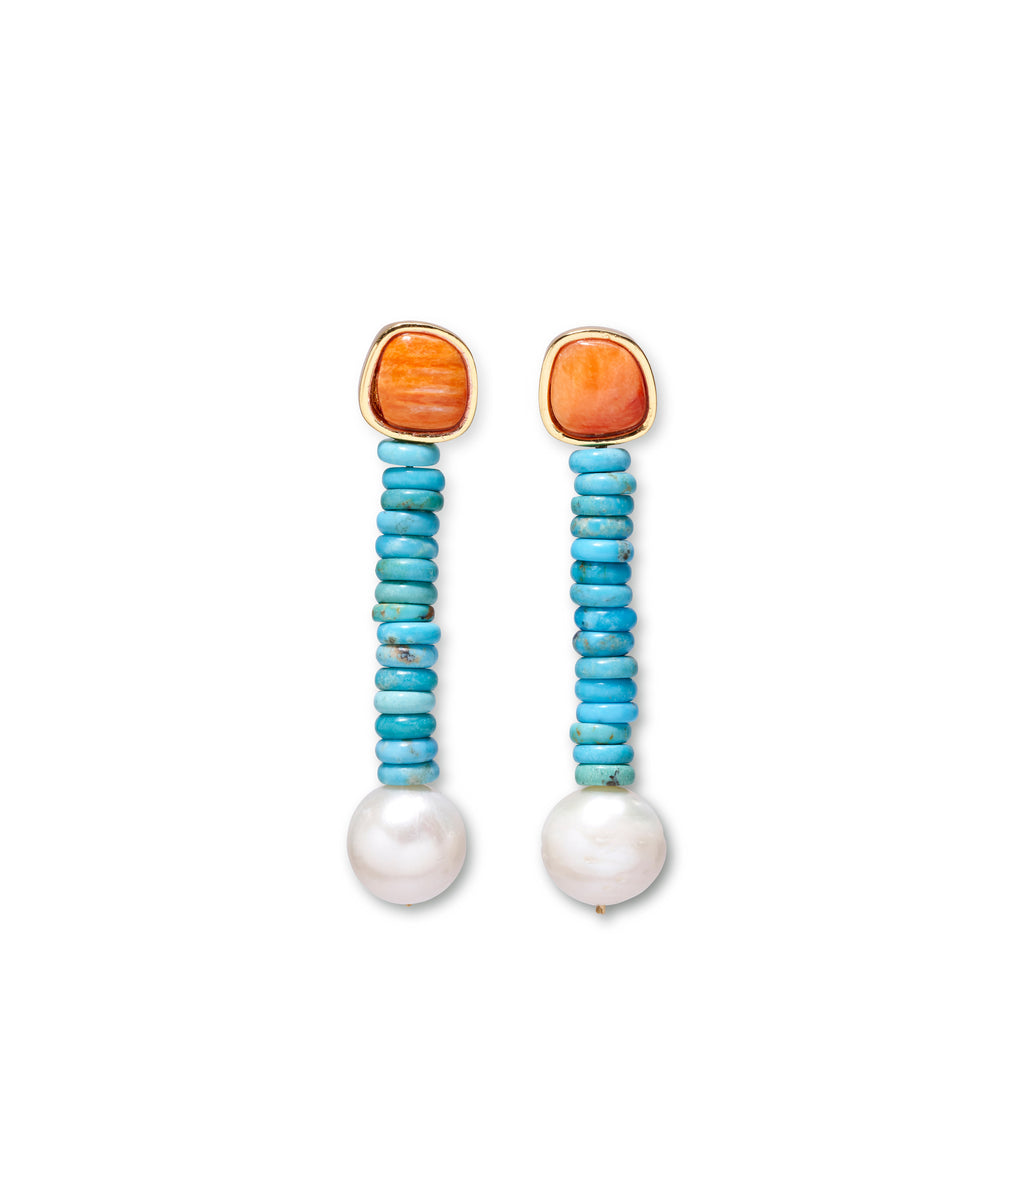 Algarve Earrings in Turquoise